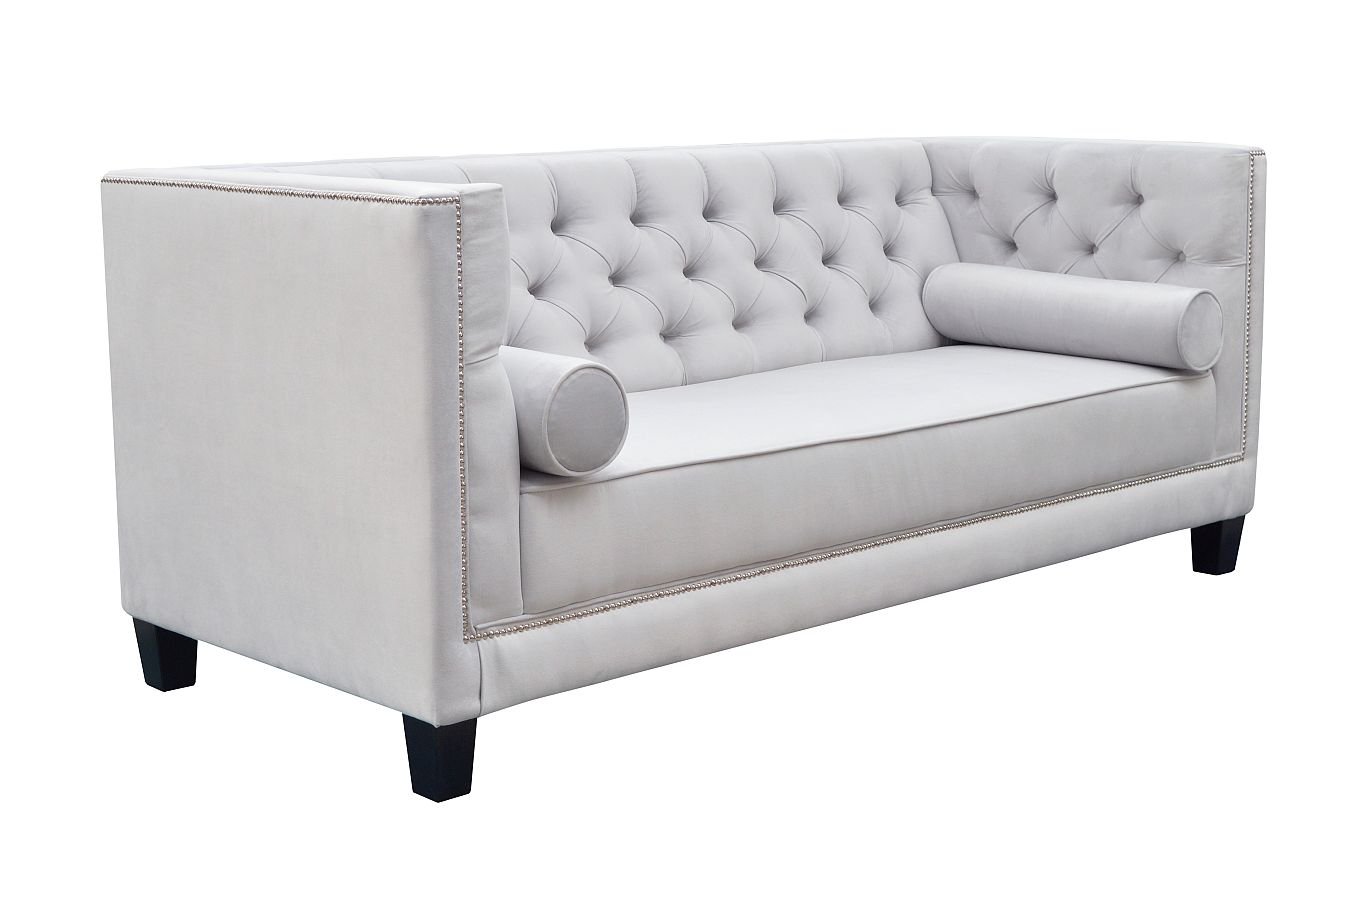 Nowoczesna sofa WENECJA pikowana w stylu Chesterfield / szer. 225 cm